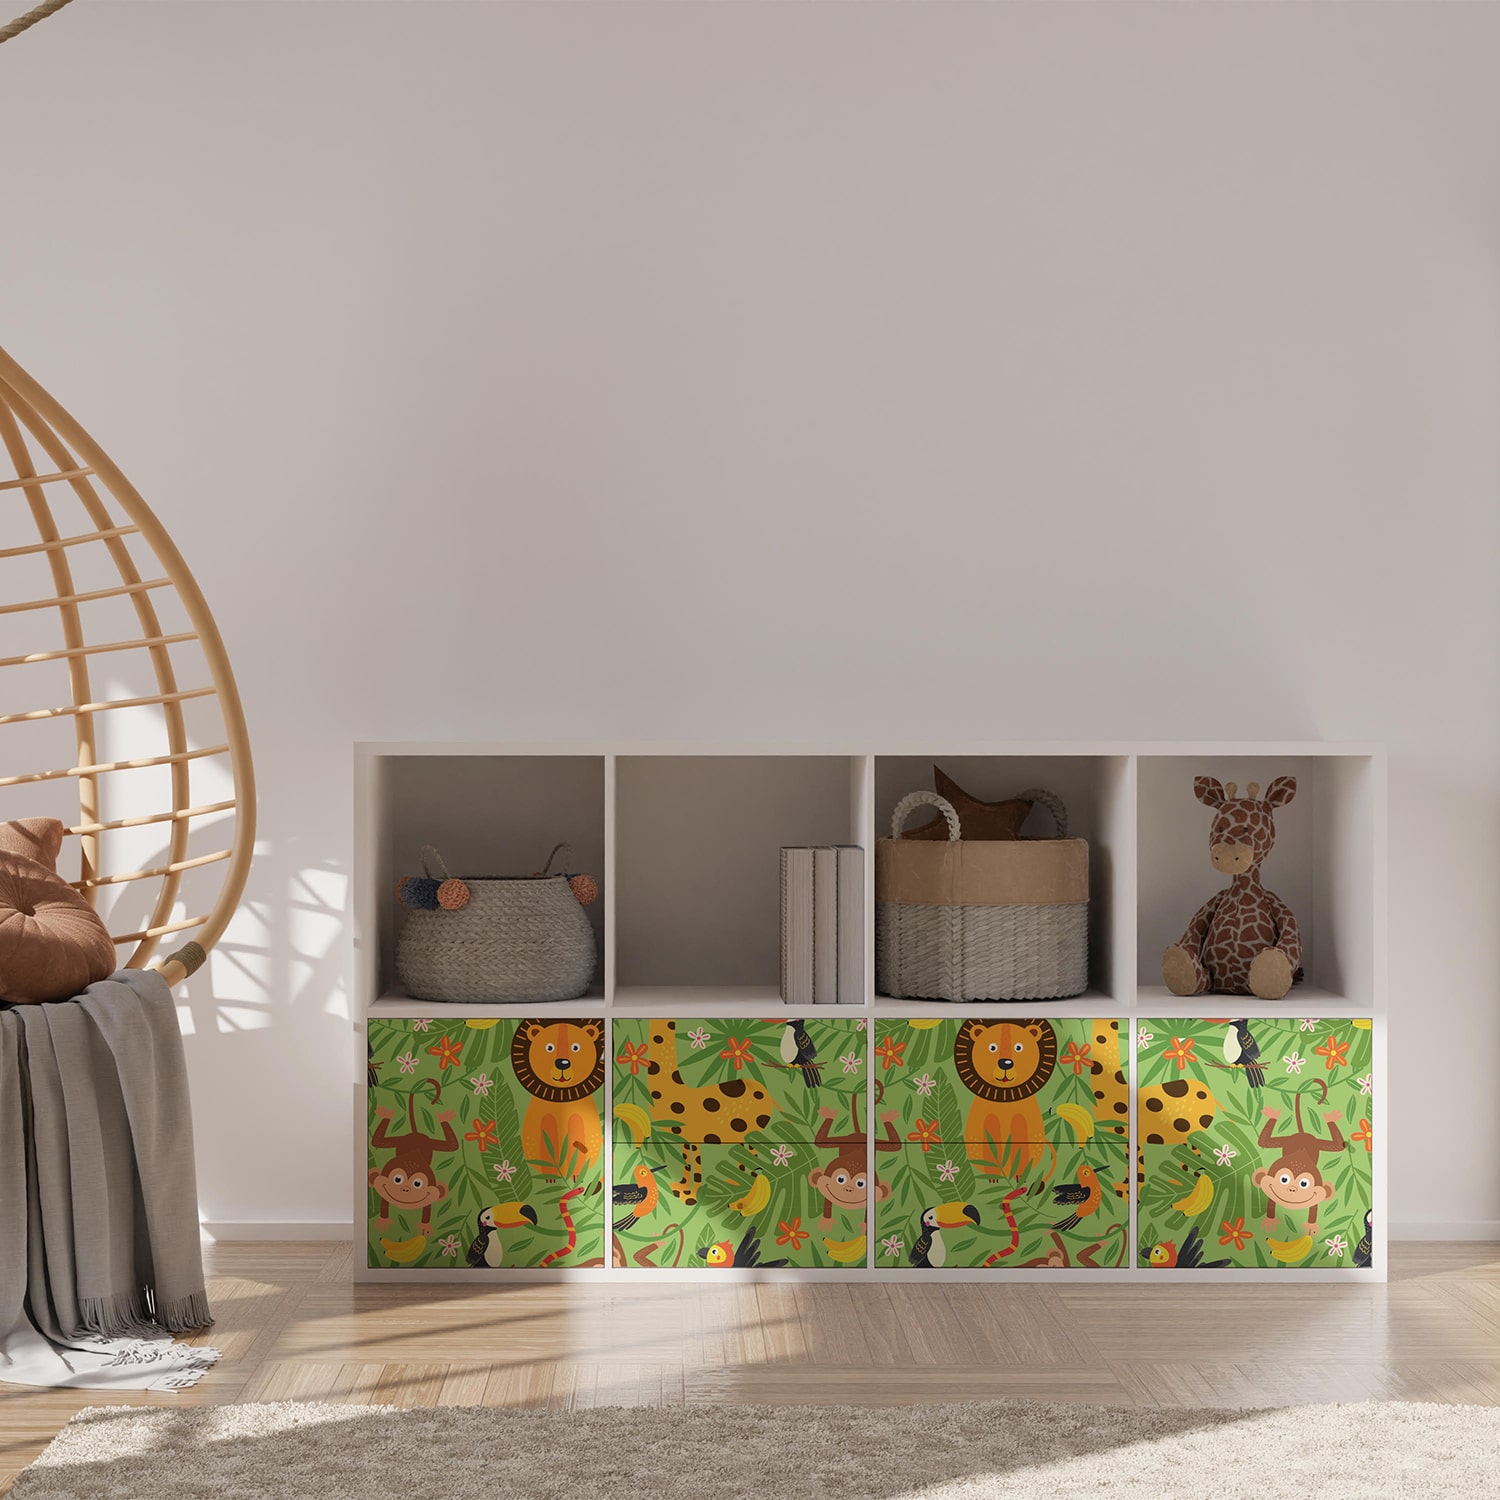 PP80-meuble-papier-peint-adhesif-decoratif-revetement-vinyle-motifs-animaux-de-la-jungle-2-renovation-meuble-mu-min